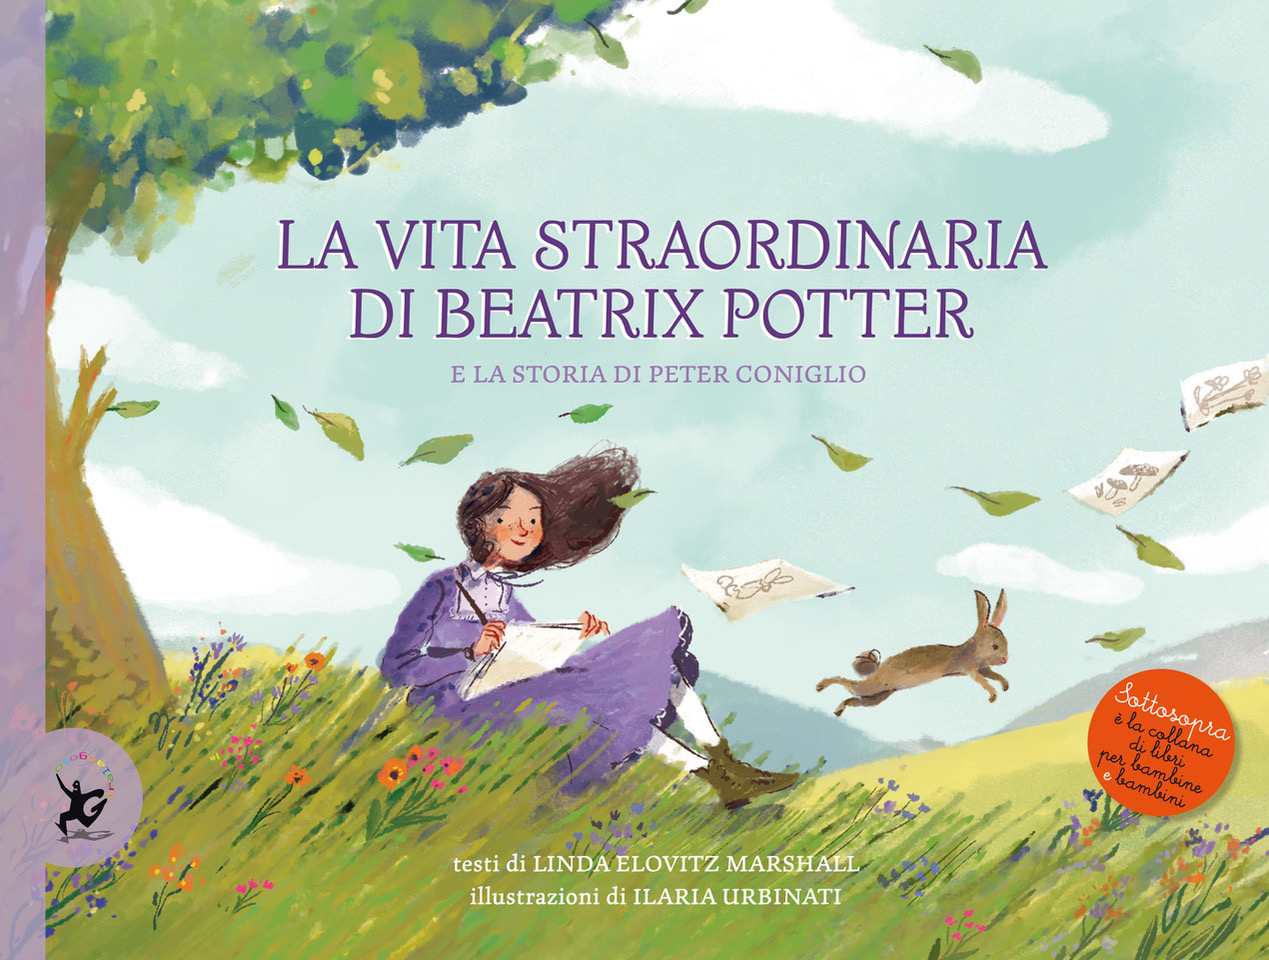 La straordinaria vita di Beatrix Potter